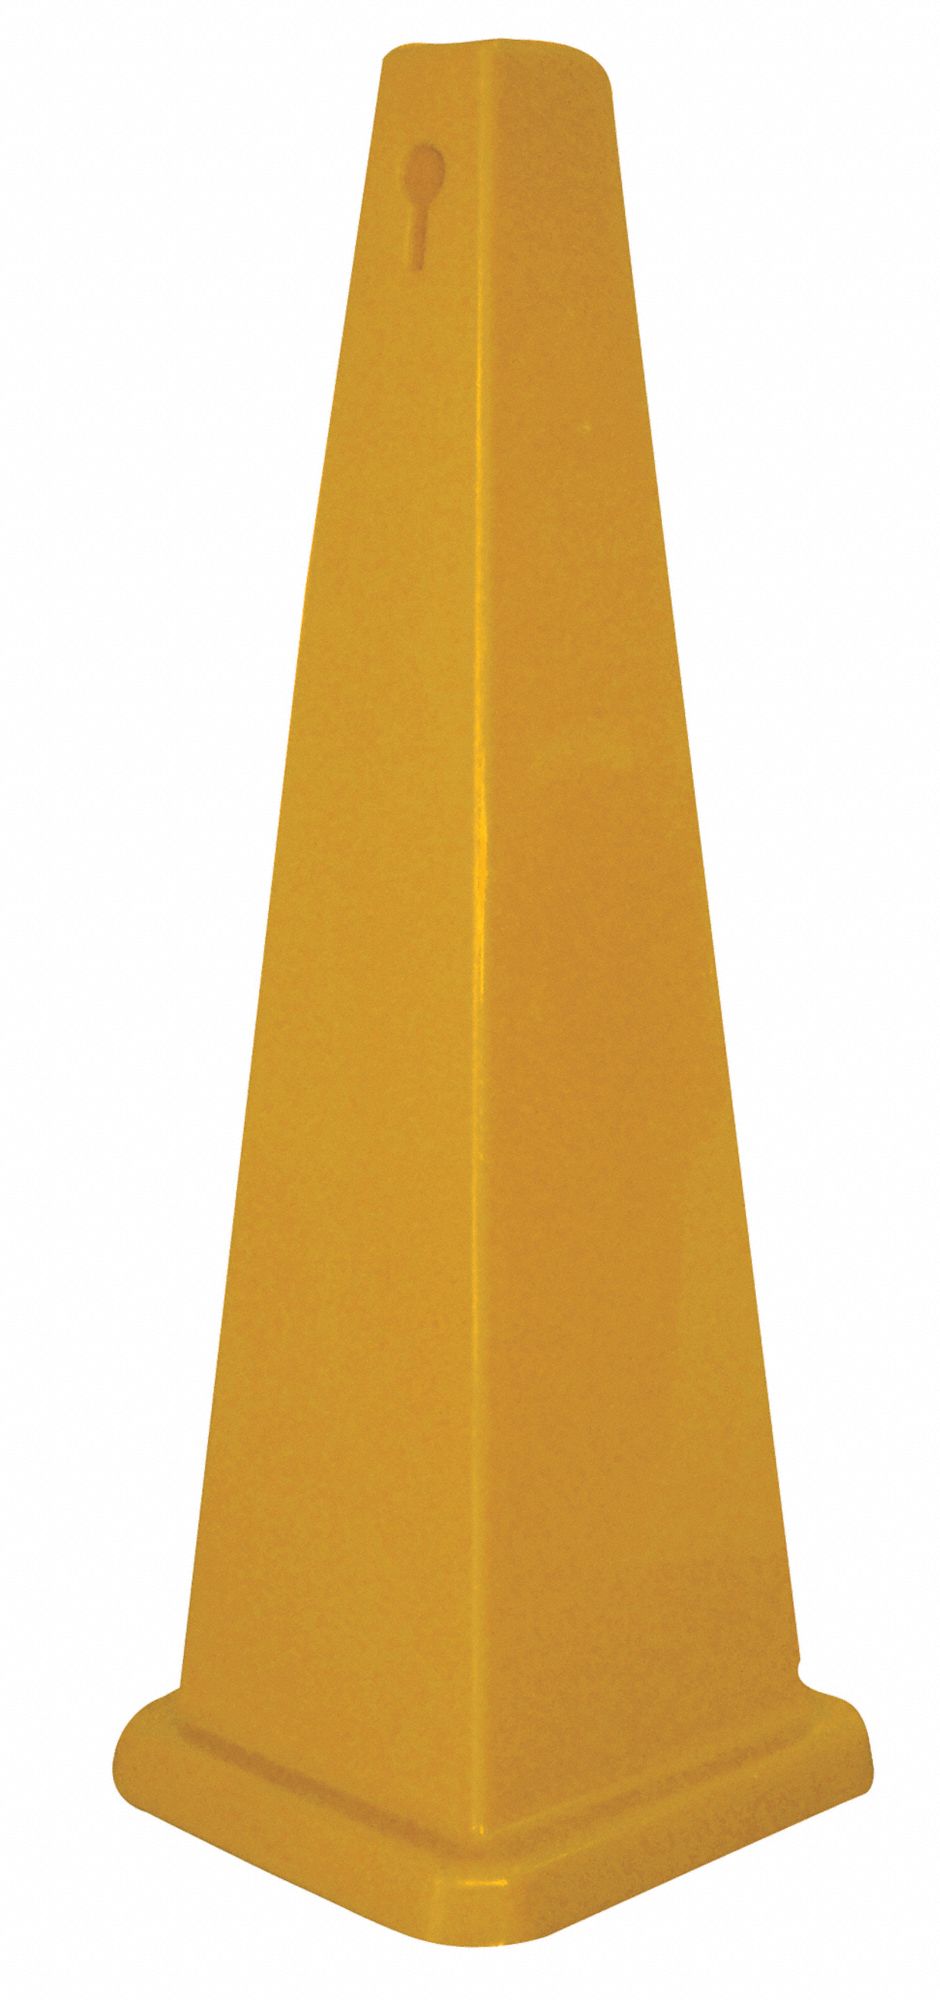 6VKR3 - 26 In Plain Yellow